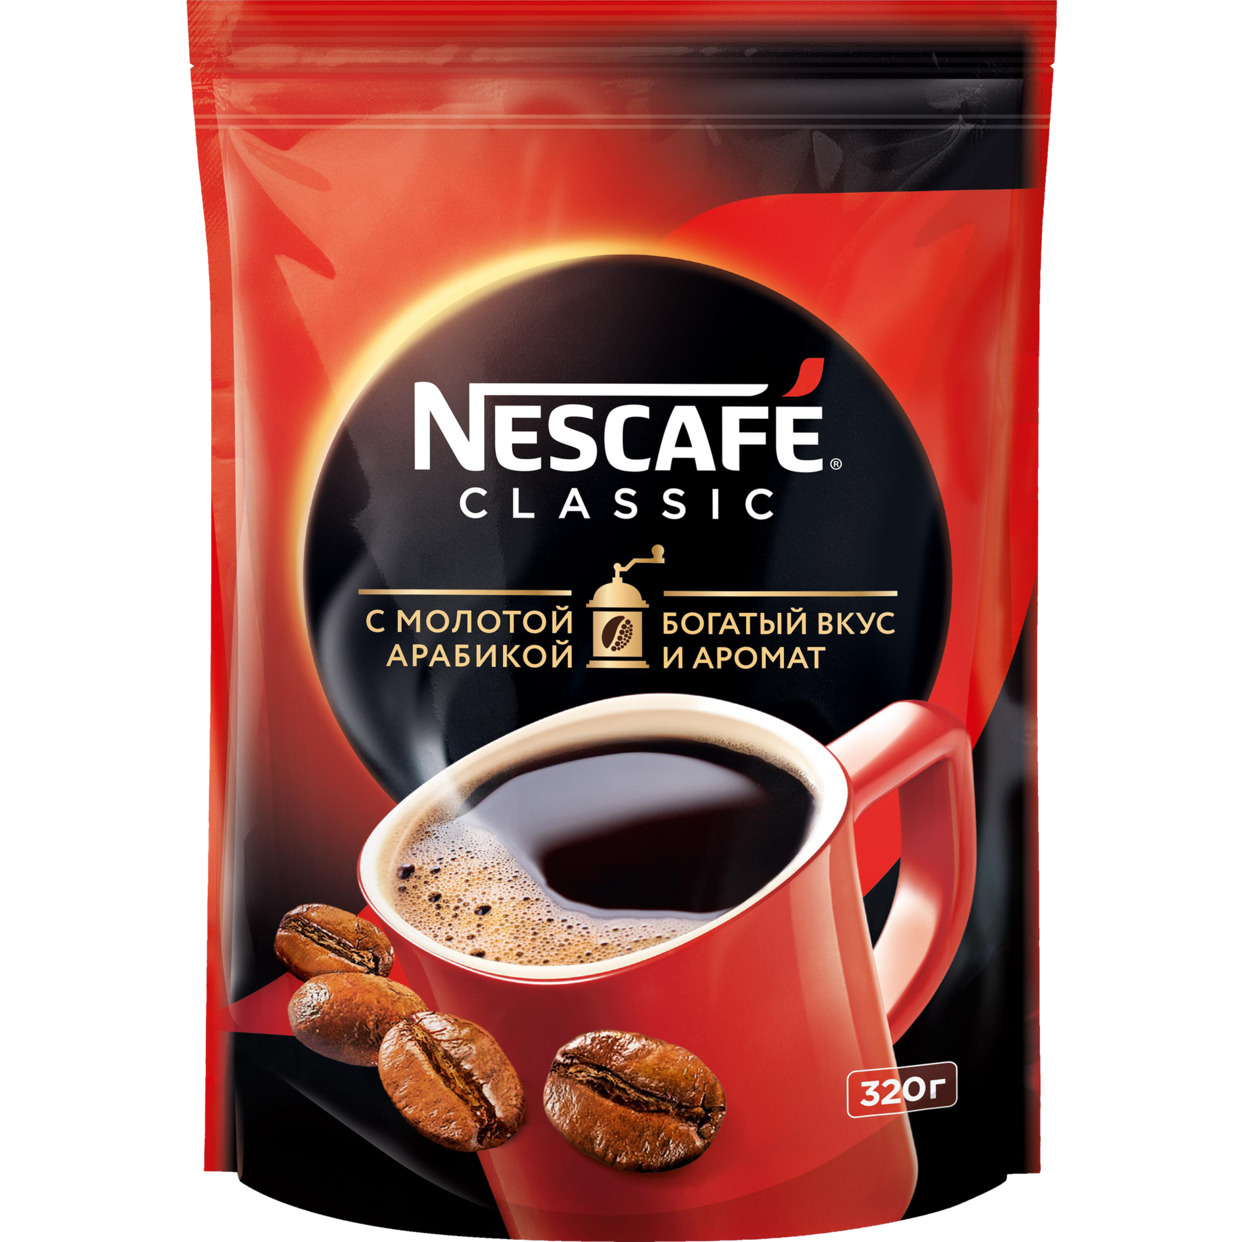 NESCAFÉ® CLASSIC, 100% натуральный растворимый порошкообразный кофе с добавлением натурального жареного молотого кофе, 320г, пакет